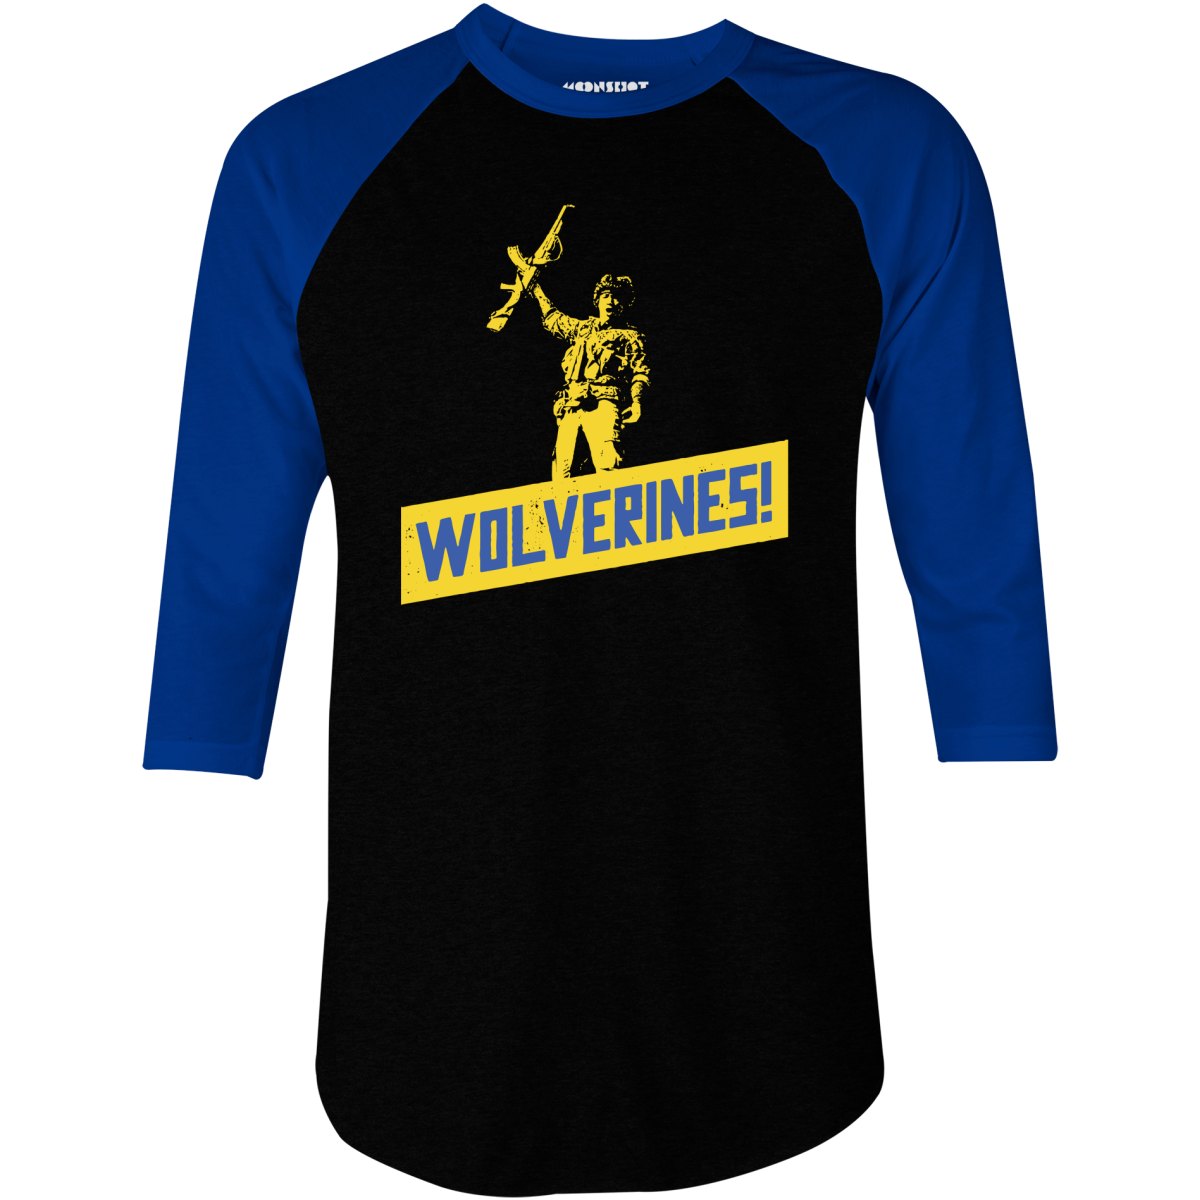 Wolverines Support Ukraine - 3/4 Sleeve Raglan T-Shirt